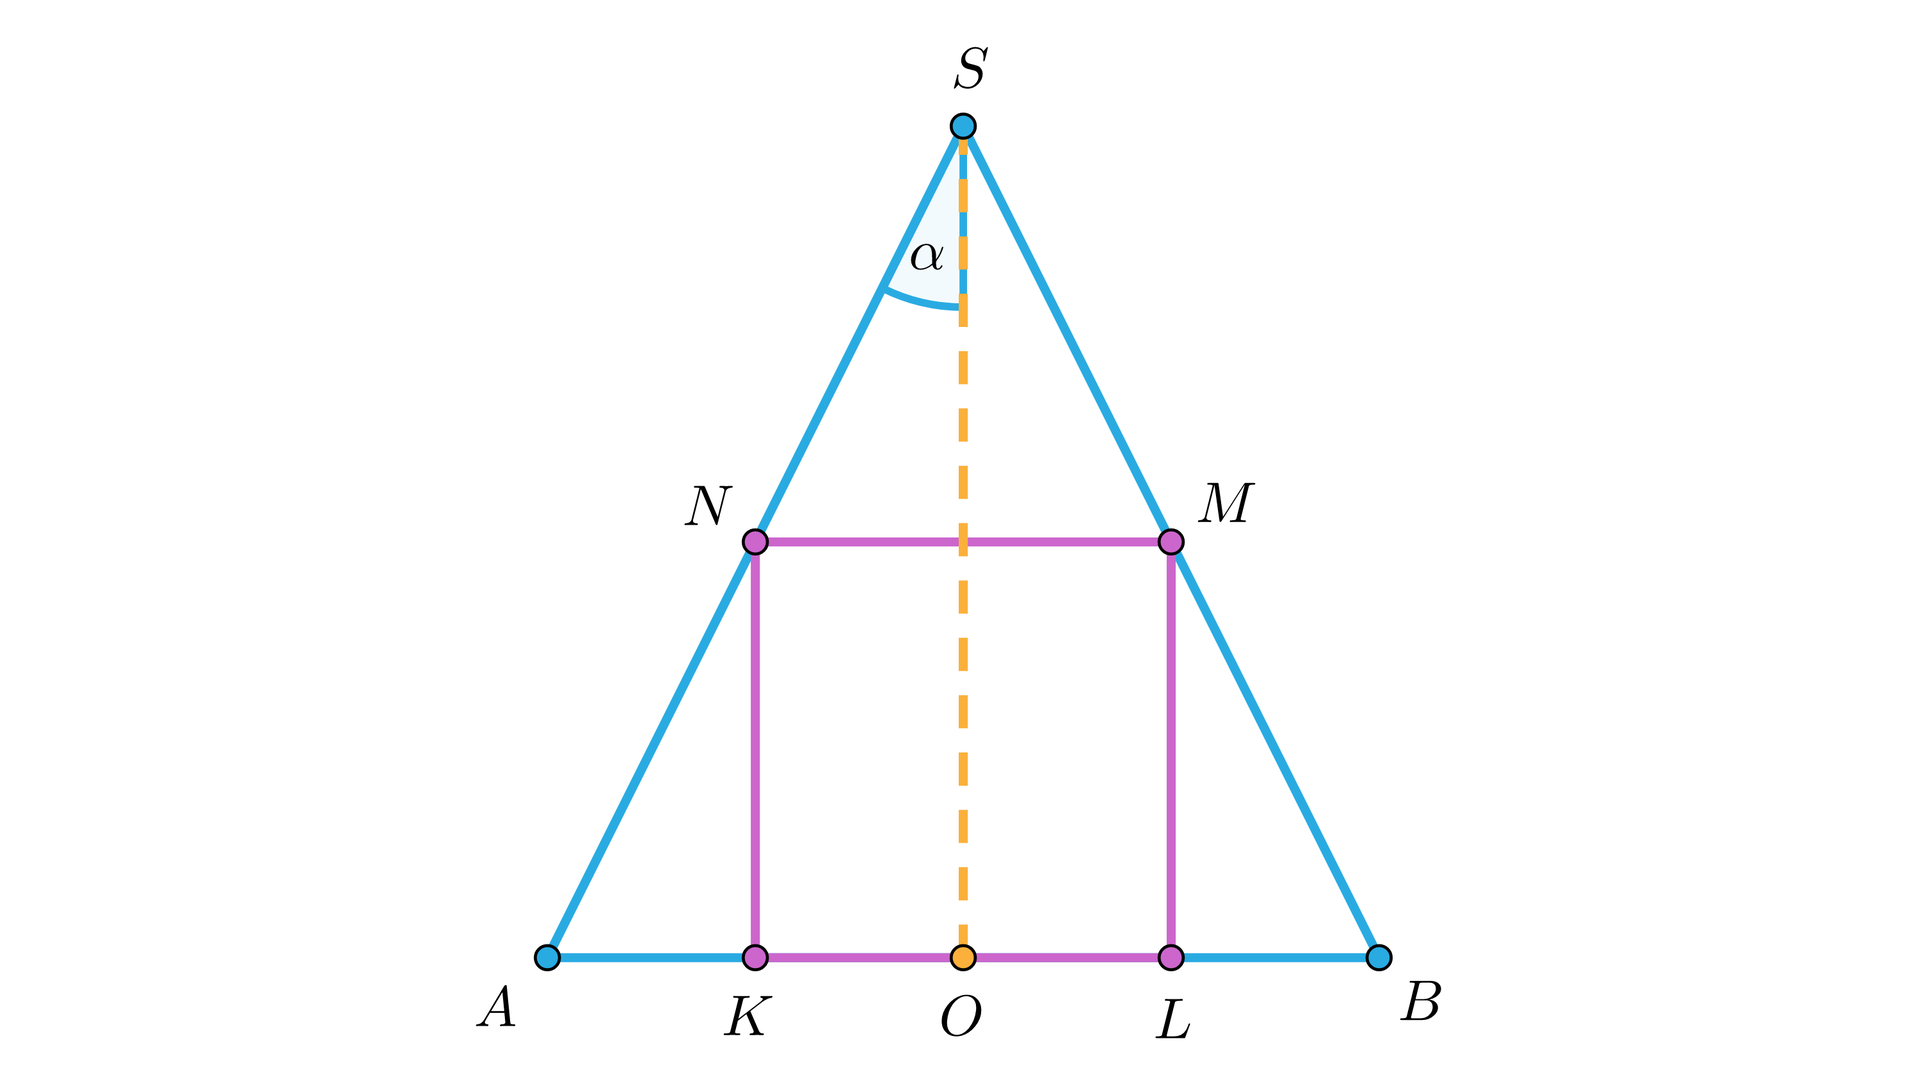 Na ilustracji przedstawiono trójkąt równoramienny ABS, w który wpisano kwadrat KLMN. Bok KL prostokąta umieszczono na boku AB, natomiast wierzchołki N i M odpowiednio na bokach AS i BS. Z wierzchołka S opuszczono wysokość trójkąta, której spodek leży w punkcie O, na boku AB. Kąt między wysokością trójkąta a jego bokiem AS oznaczono przez alfa.